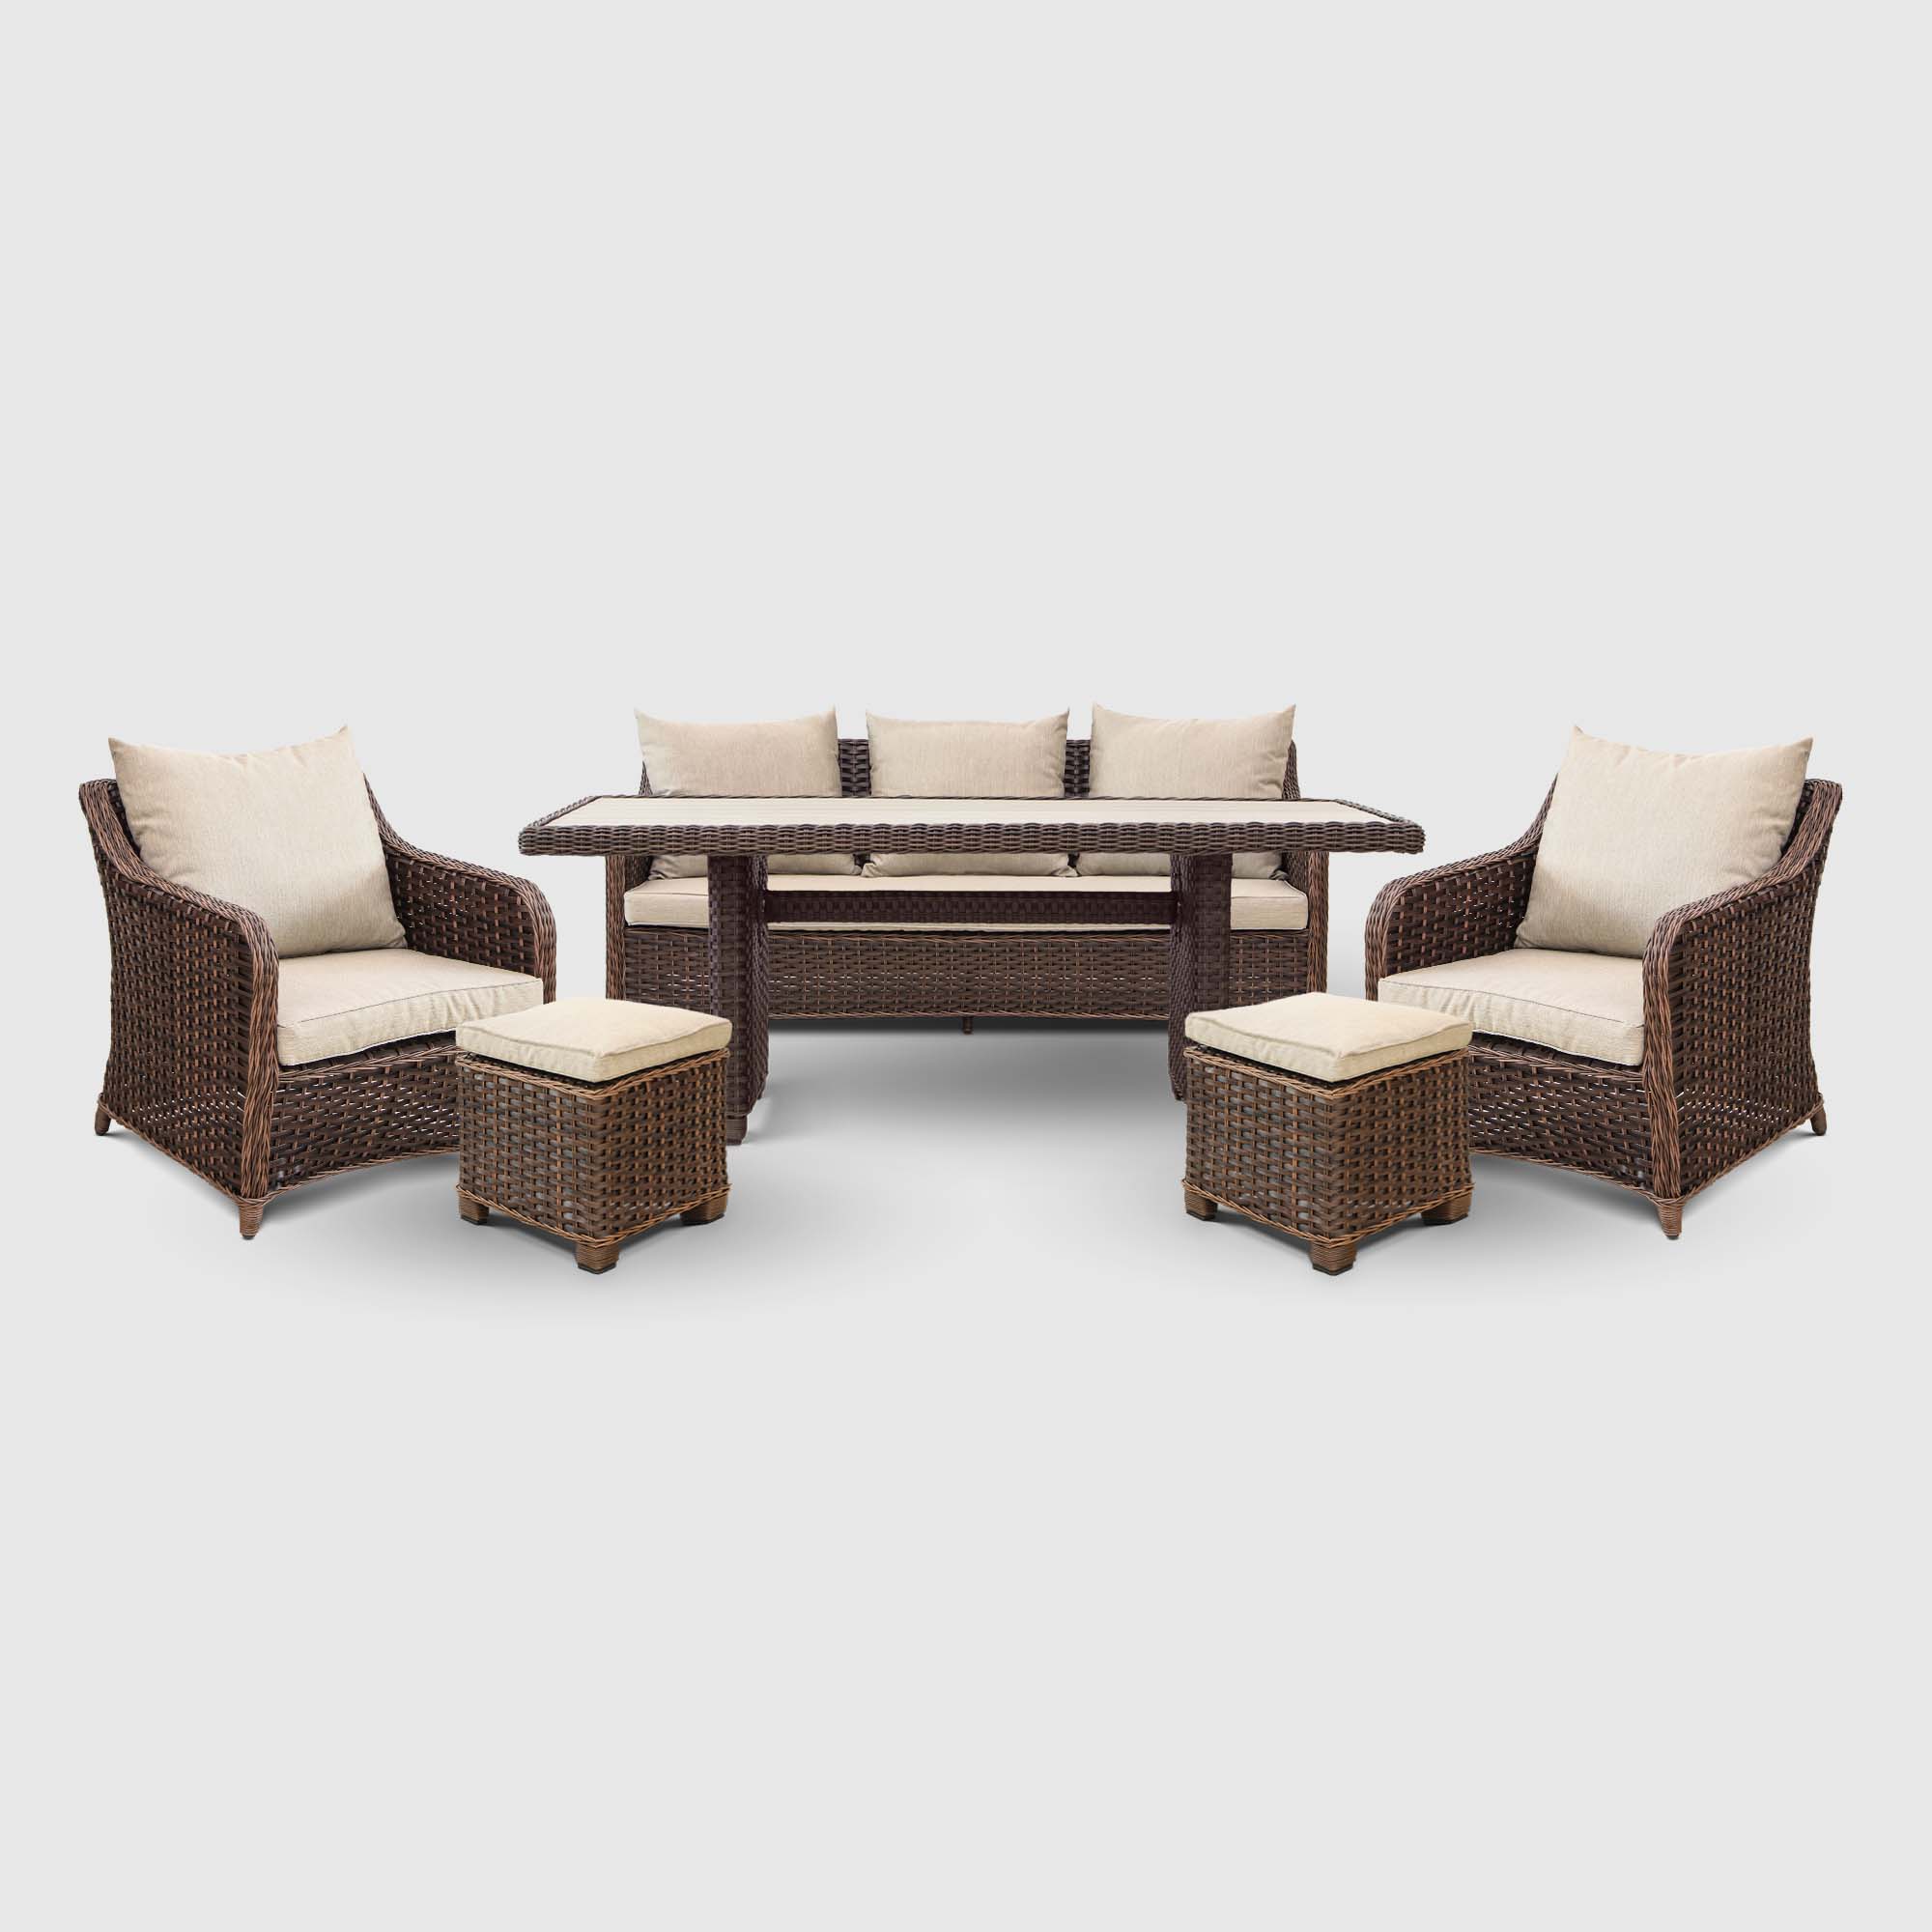 Комплект мебели Yuhang 6 предметов коричневый, цвет бежевый, размер 194х65х78 см